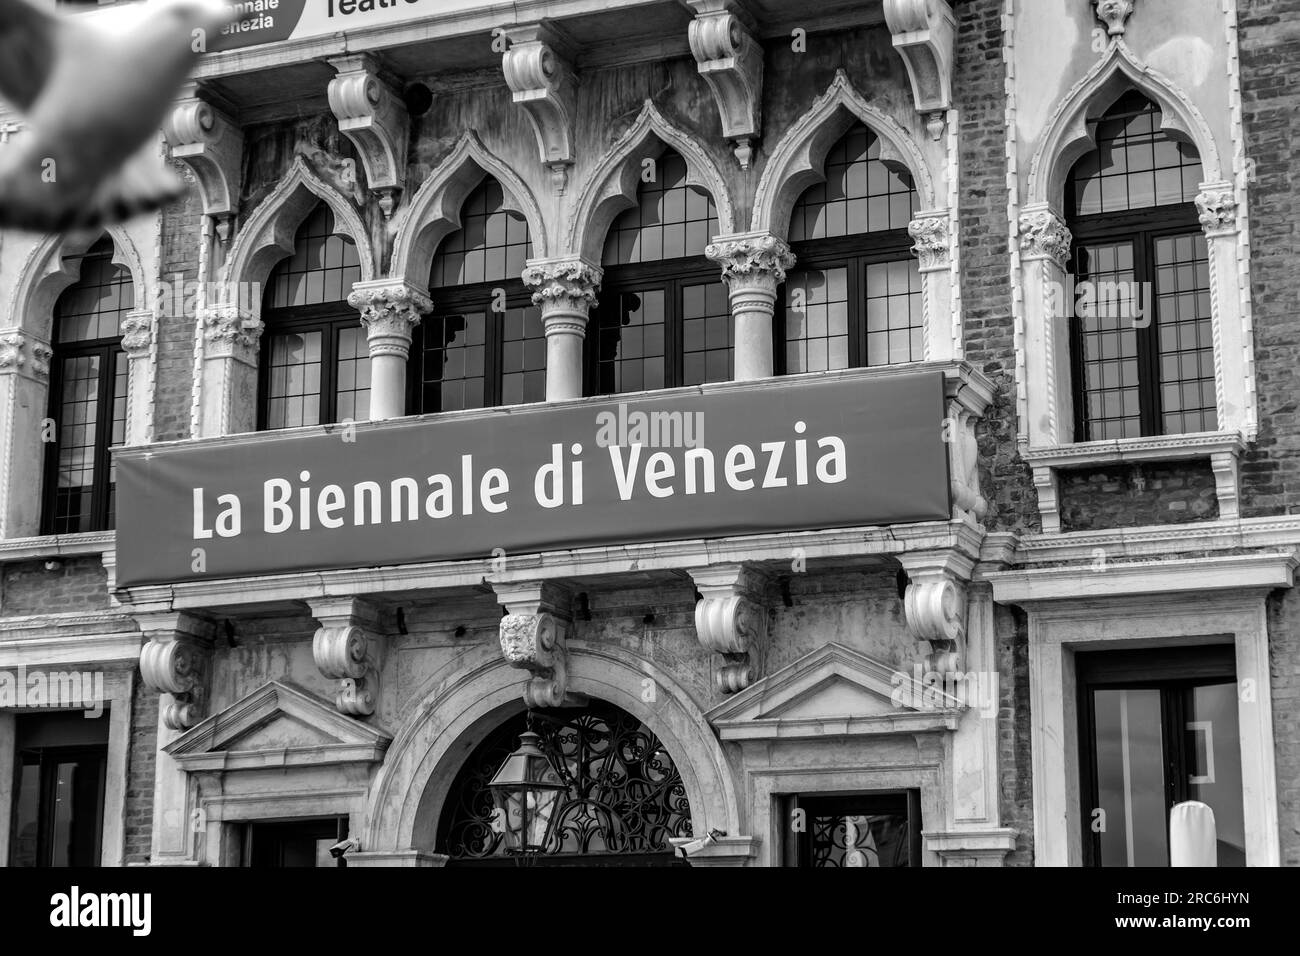 Venedig, Italien - 2. April 2022: Zeichen der jährlichen Biennale von Venedig in italienischer Sprache, an einer palazzo-Mauer aufgehängt. Stockfoto